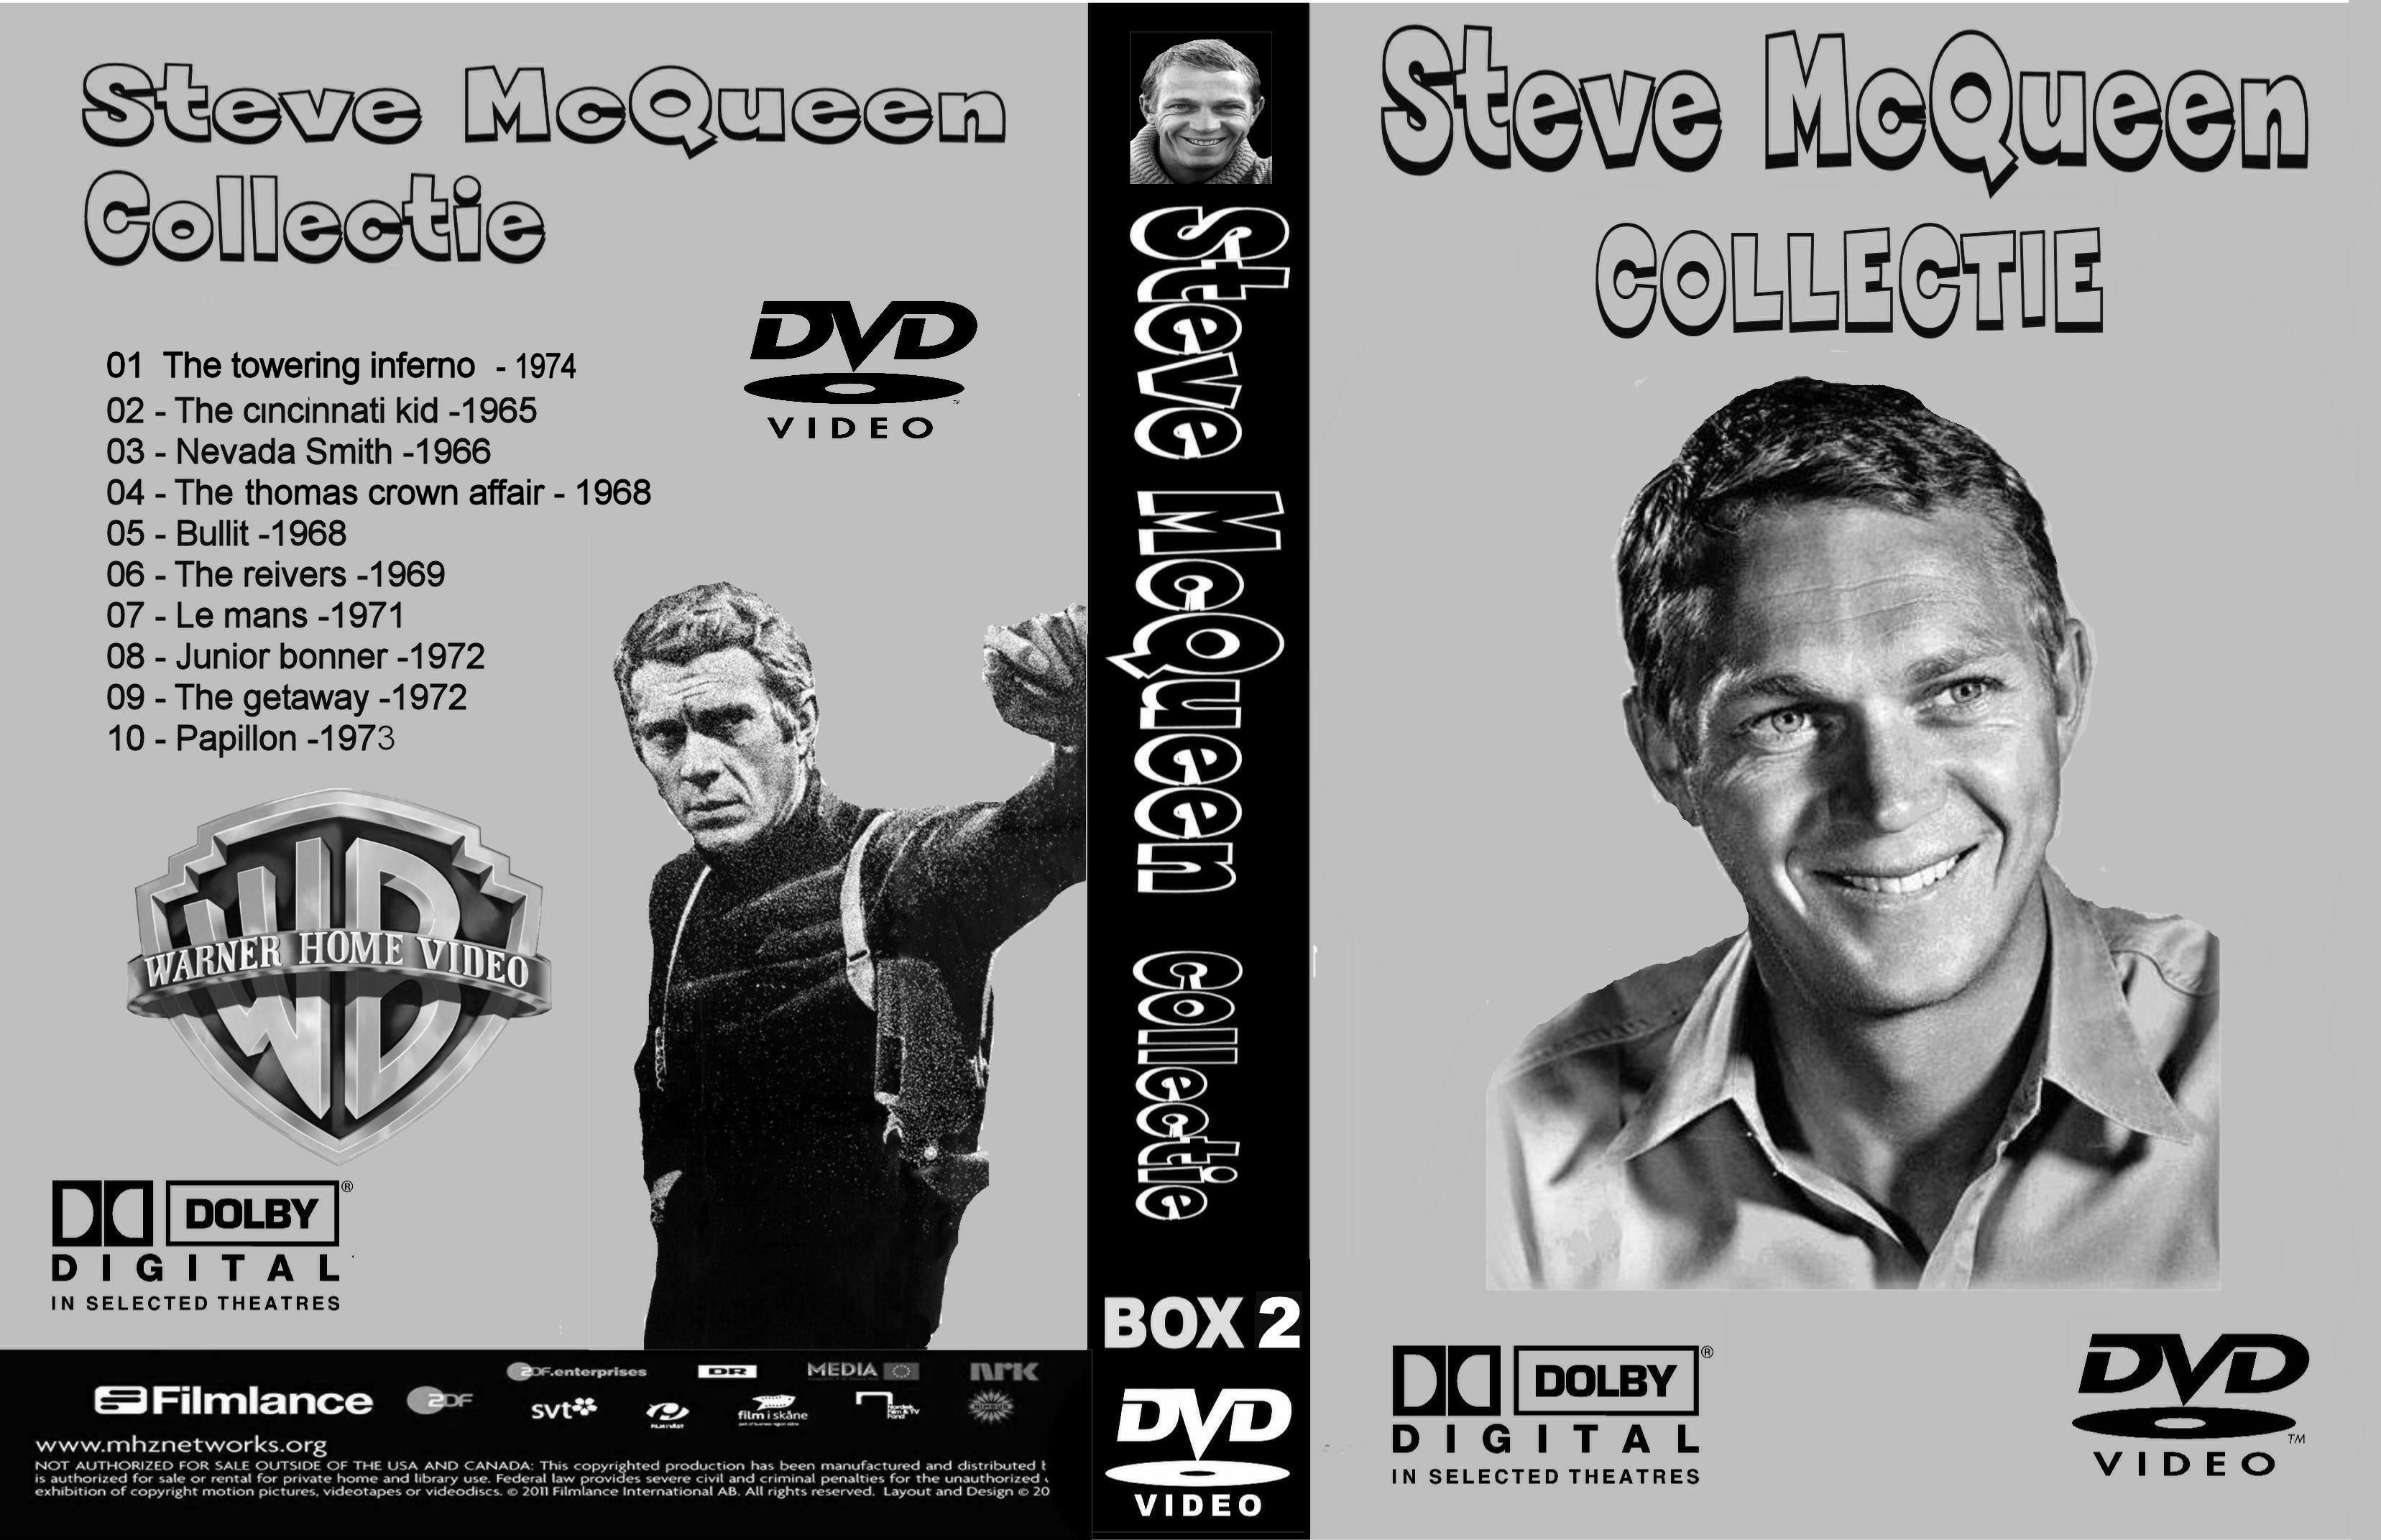 Steve McQueen Collectie Boxc 2 DvD 5 van 10